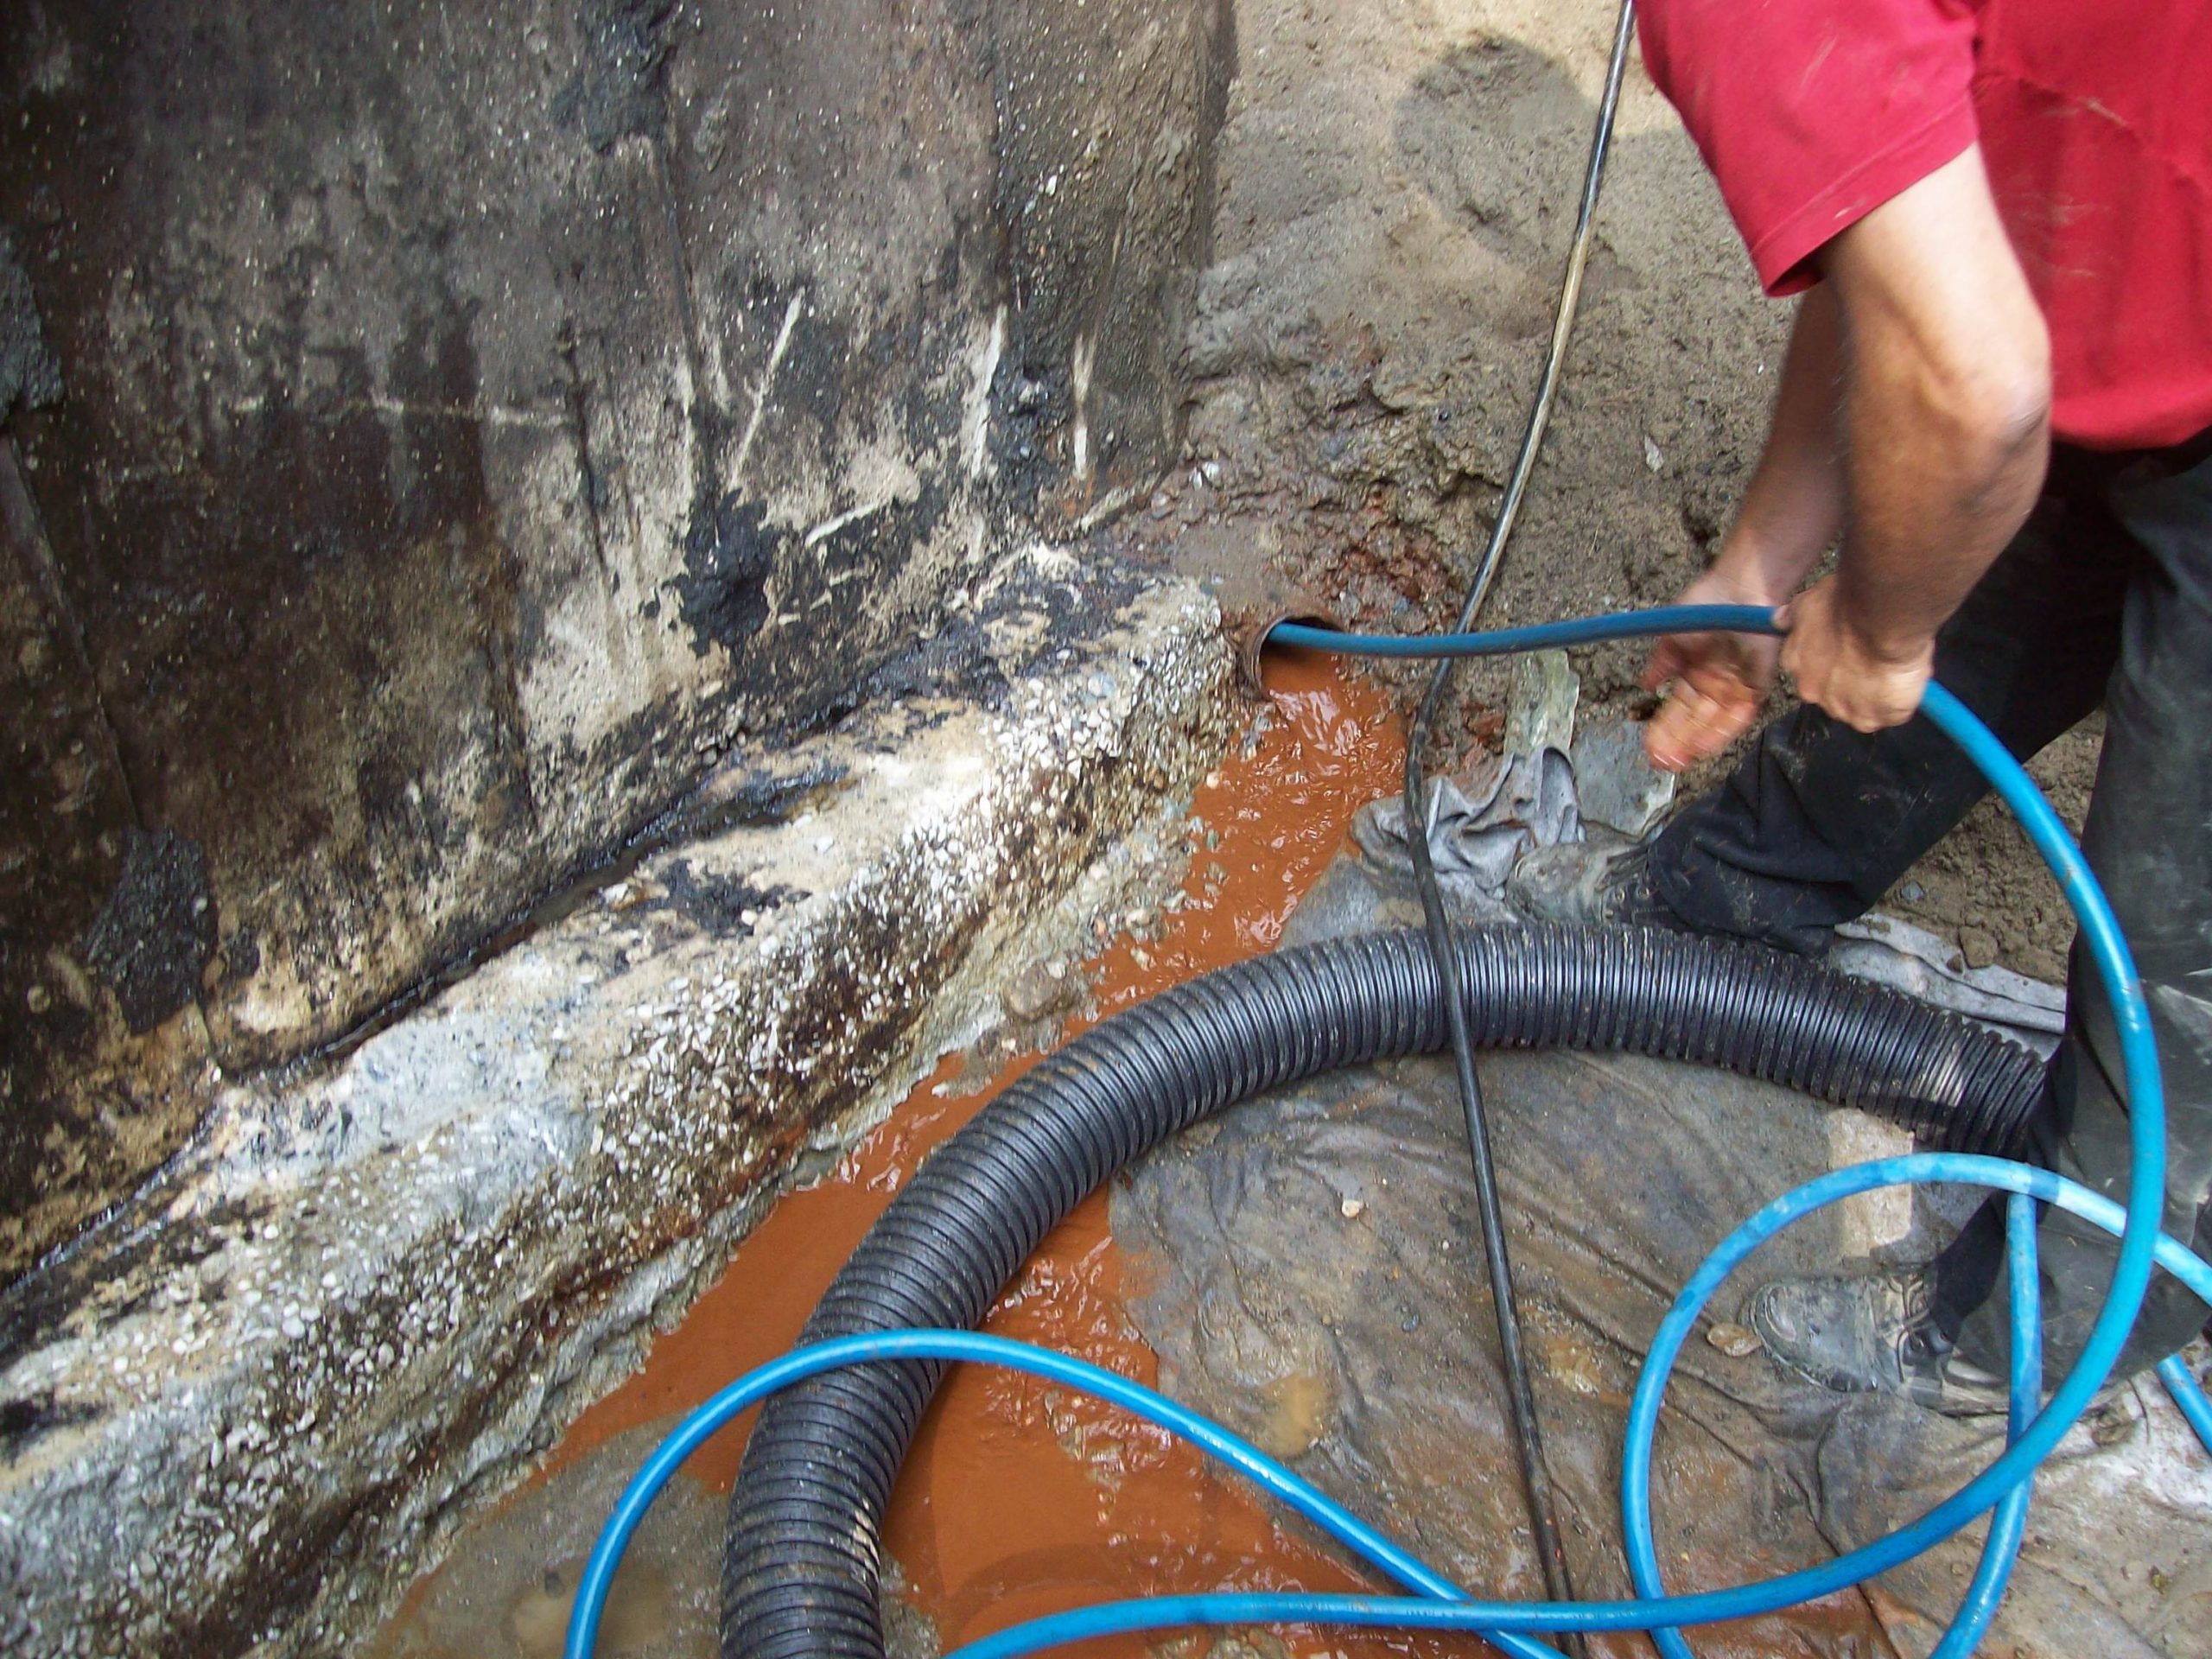 Nettoyage de tuyaux après intervention, Une autre façon de nettoyer les  tuyaux après intervention. Ce n'est pas nouveau, mais qu'en pensez-vous ?, By Actu112